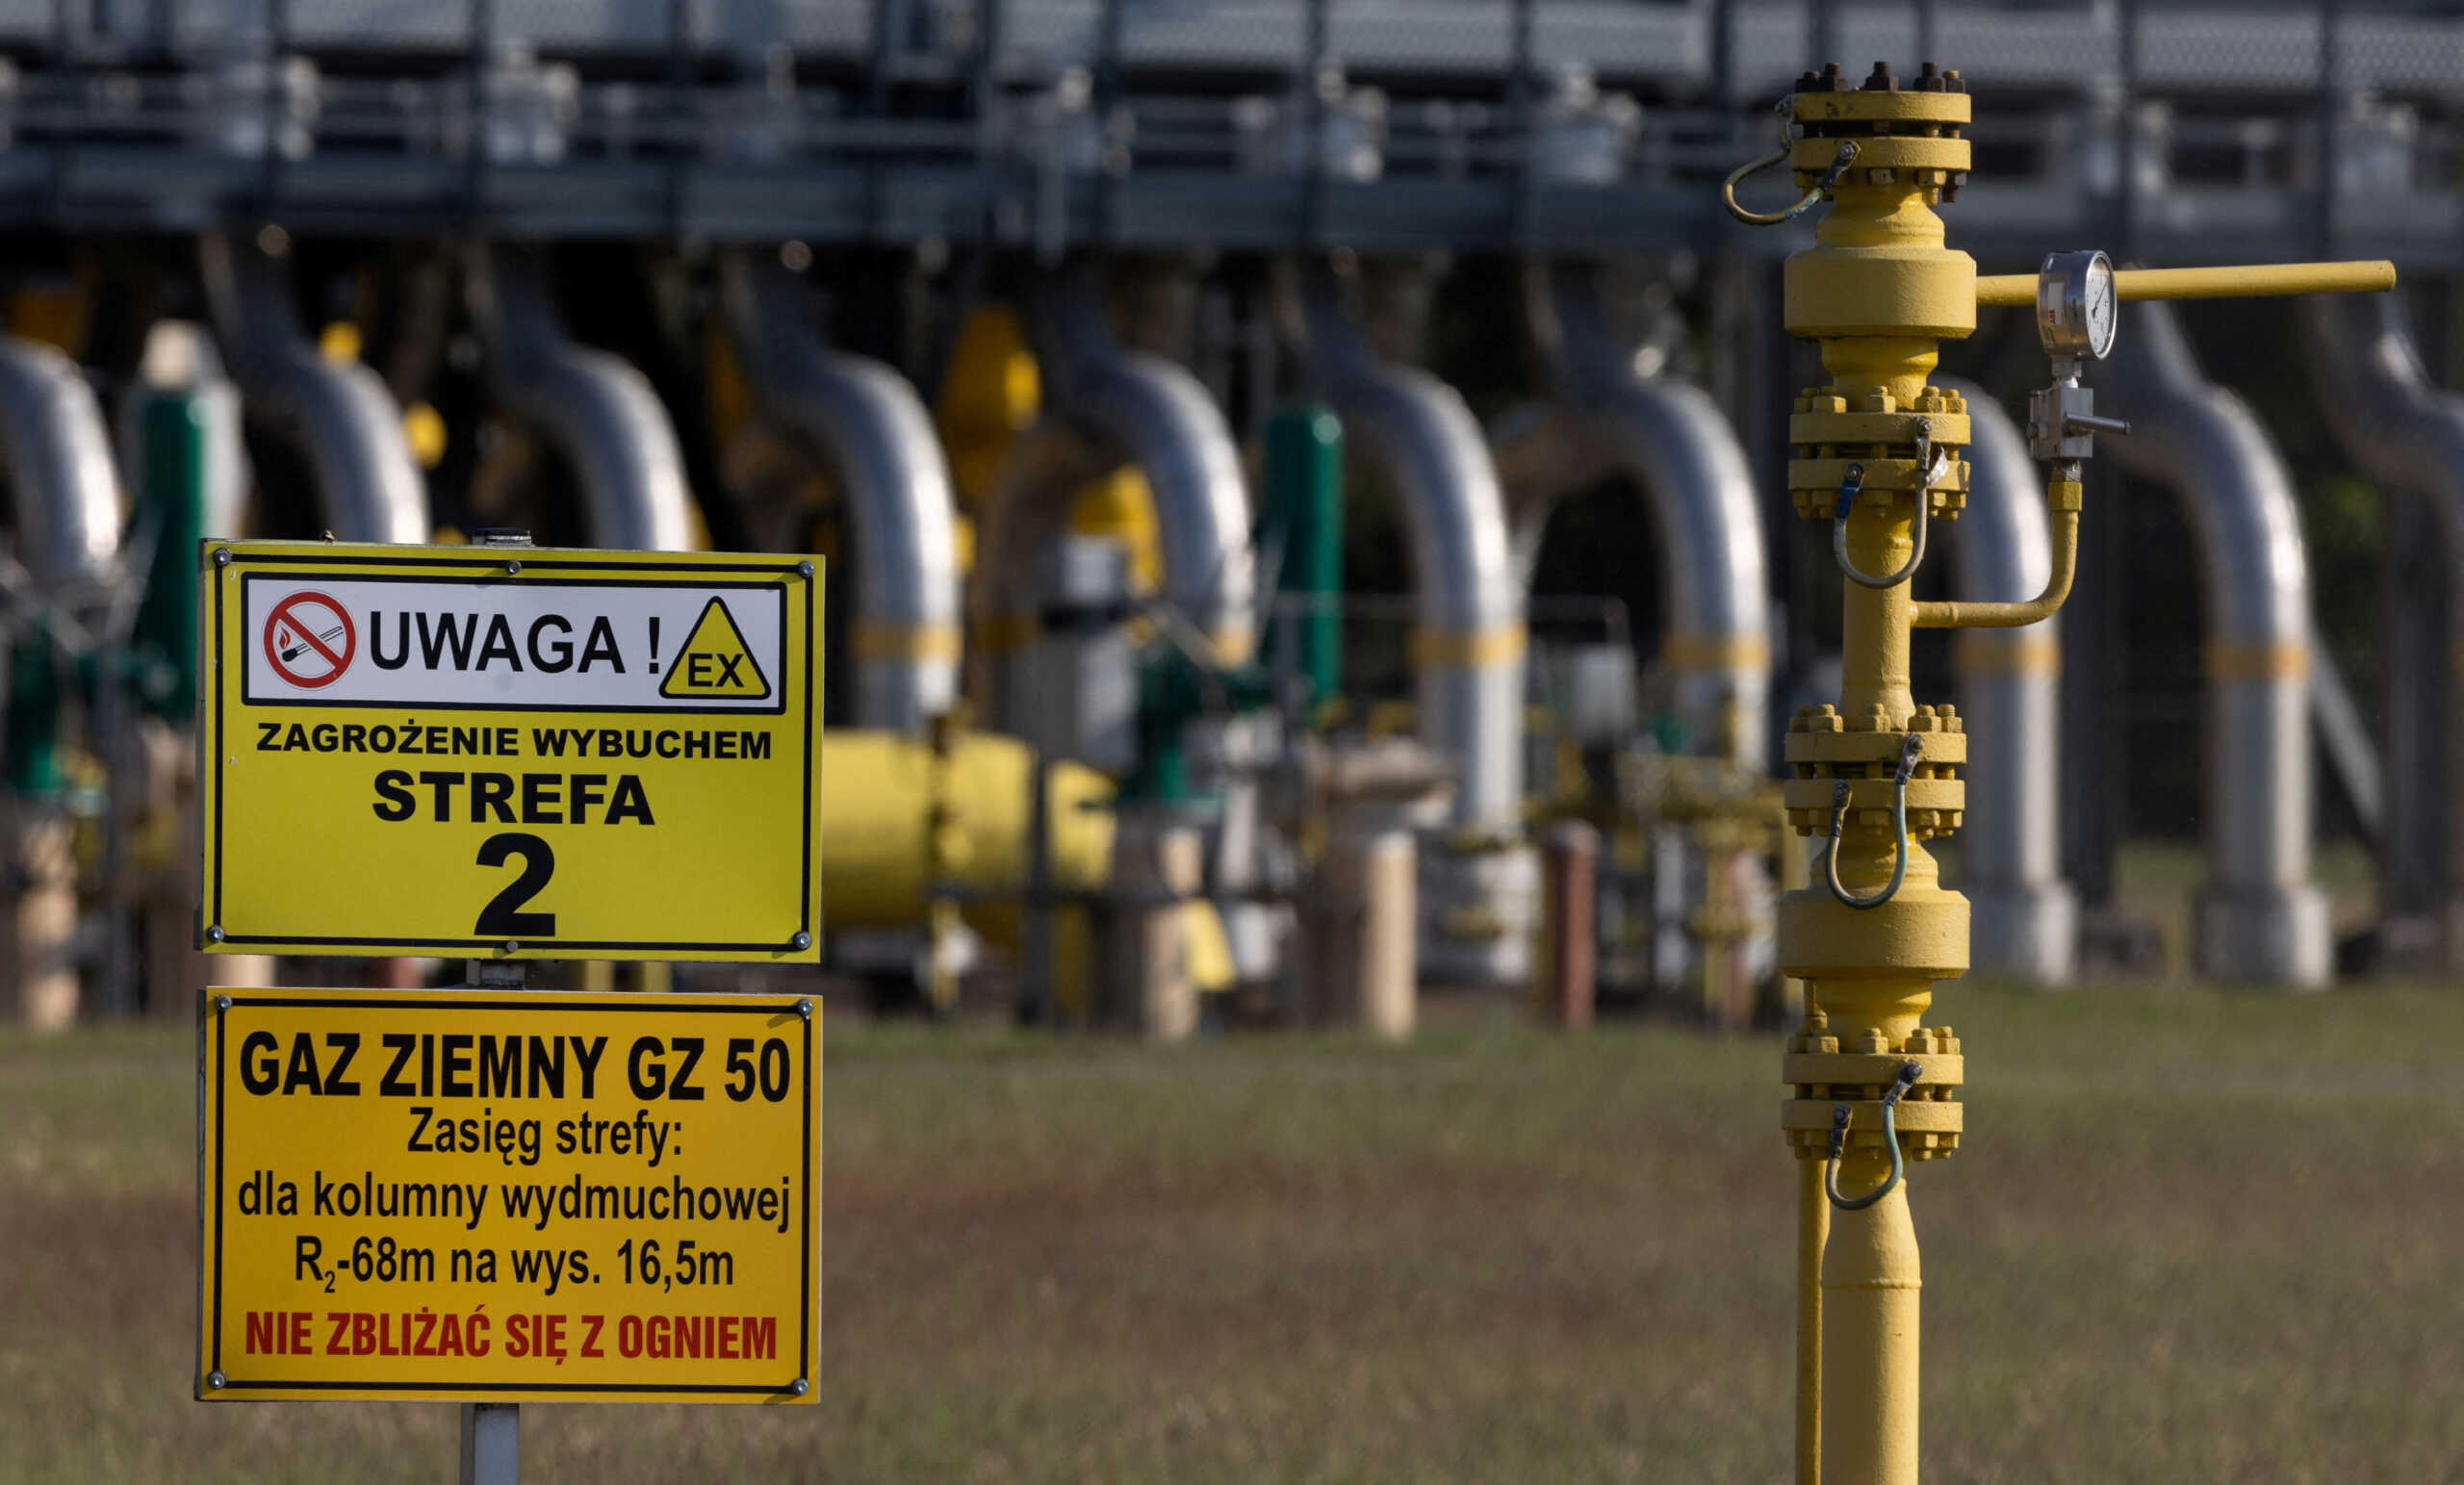 Κατάρ: «Το ρωσικό φυσικό αέριο θα επανέλθει στην Ευρώπη» λέει ο υπουργός Ενέργειας